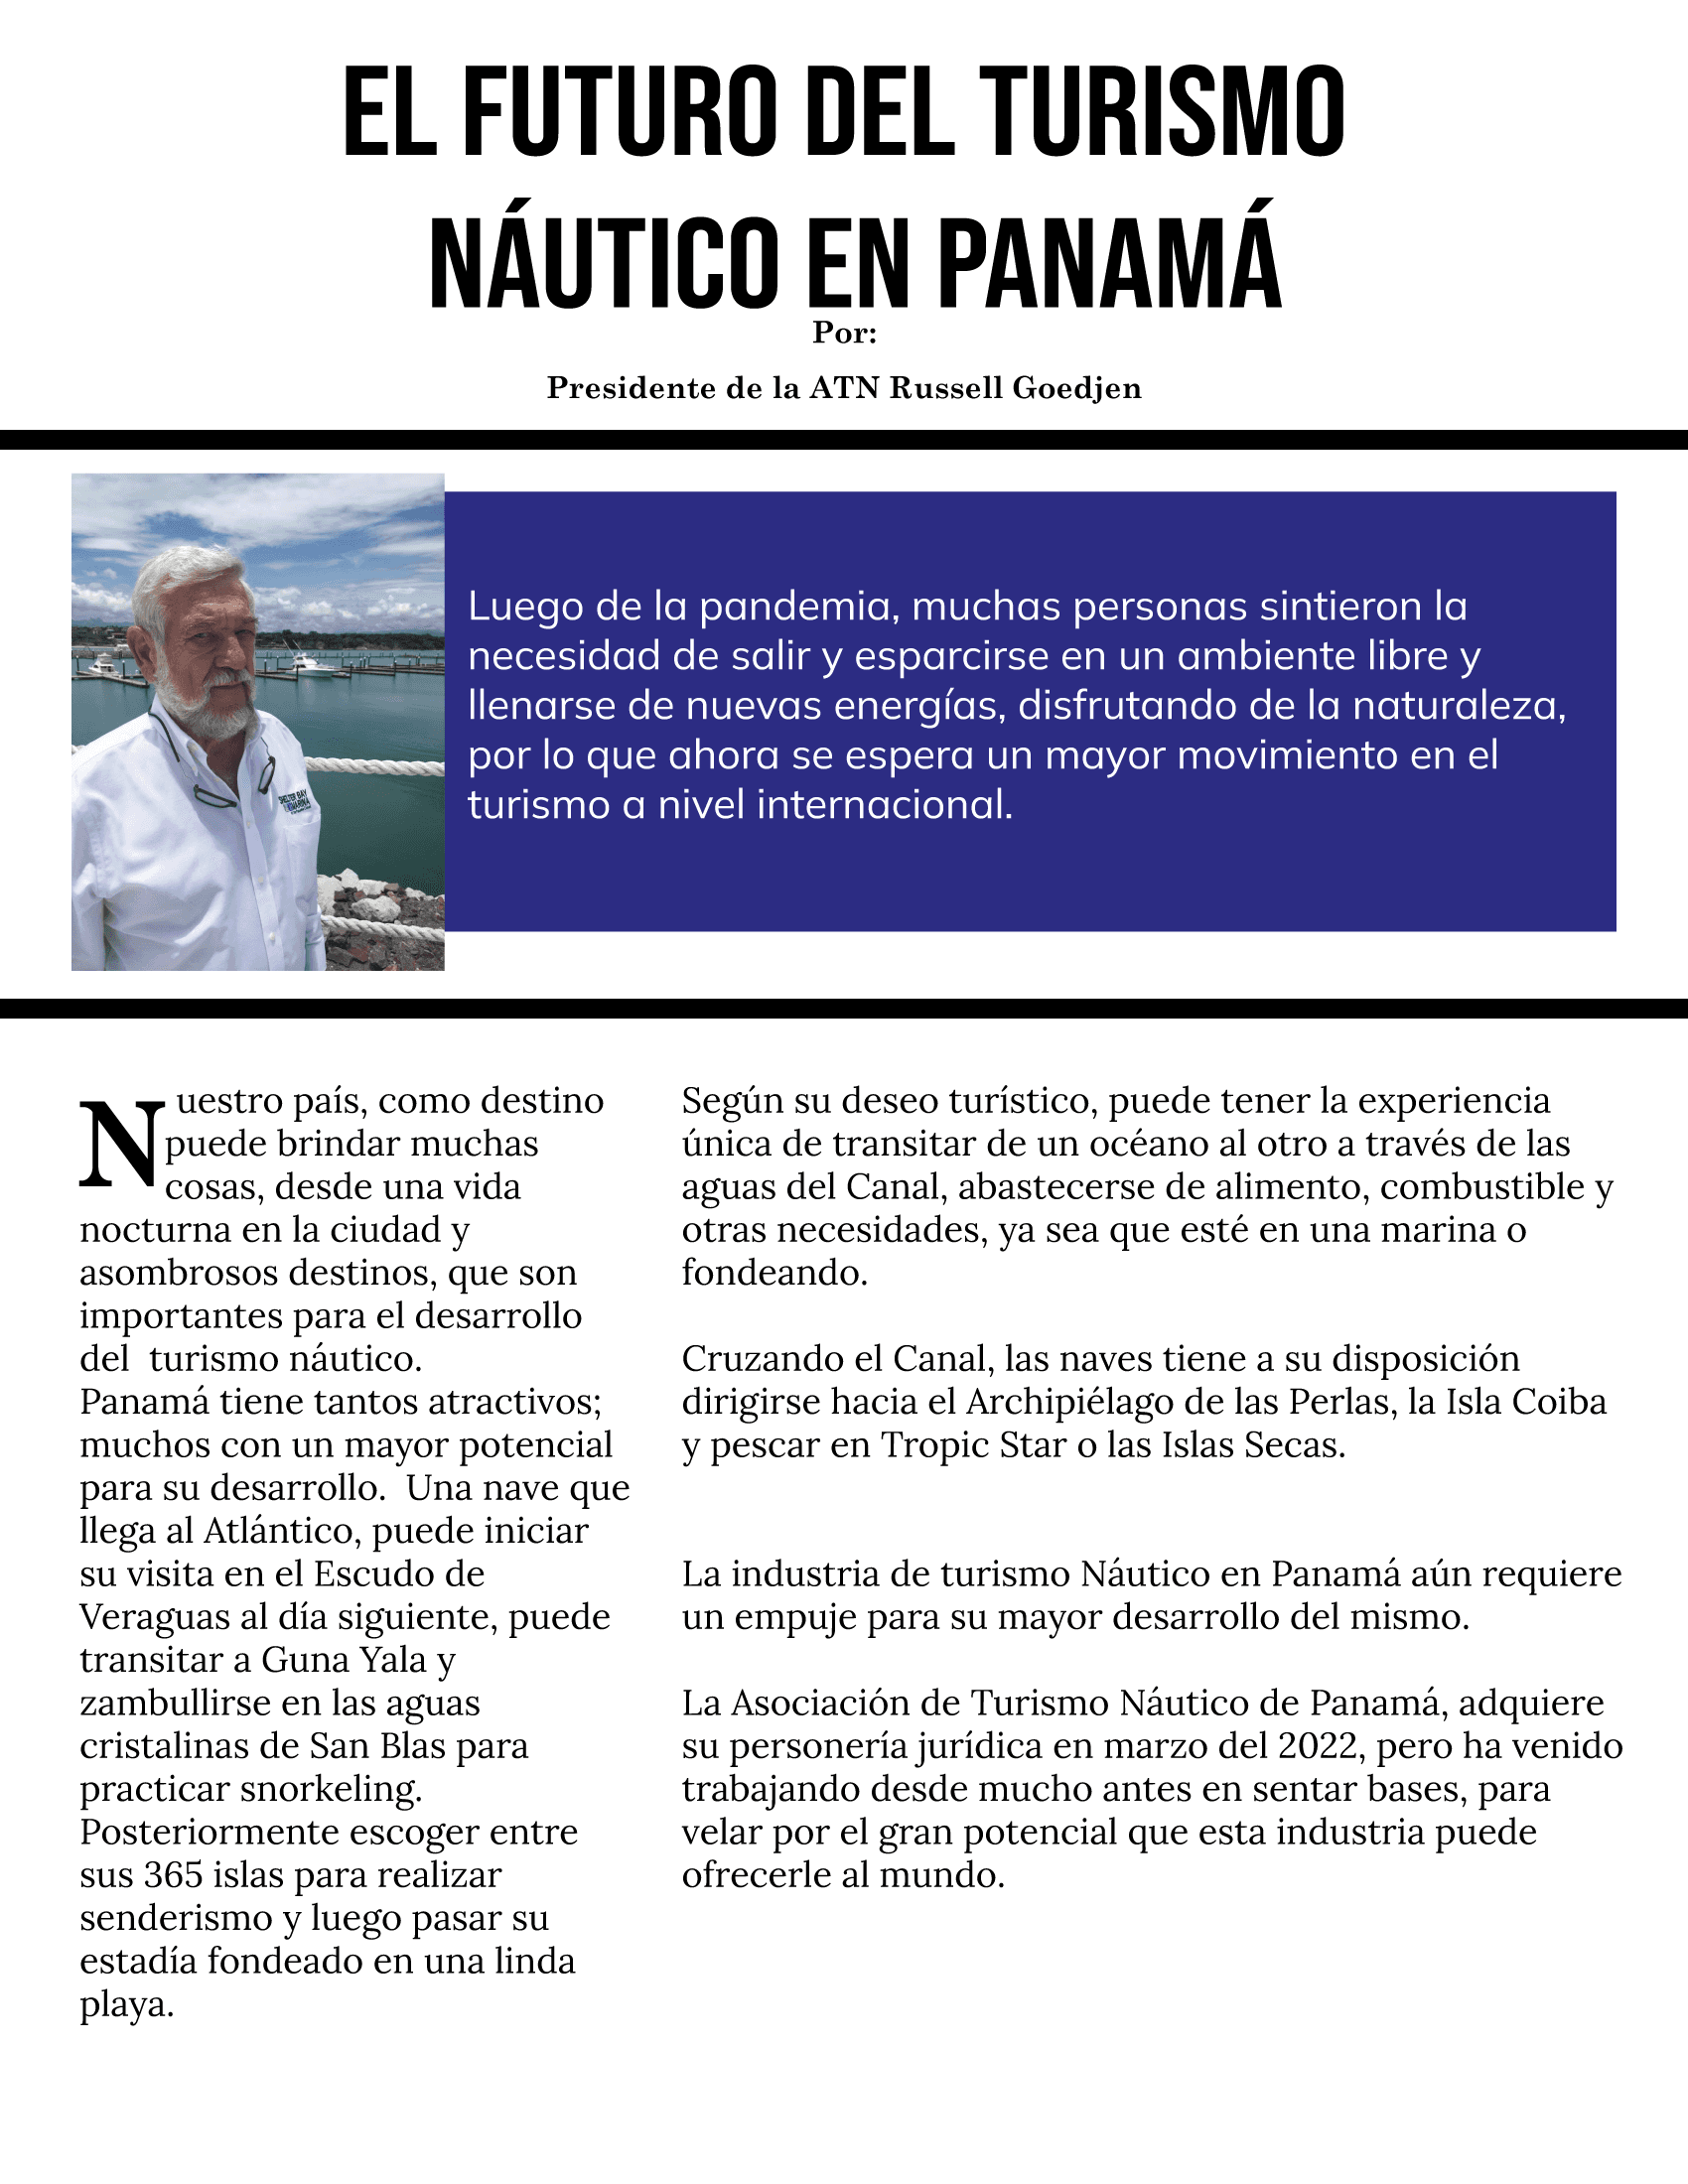 El Futuro del turismo náutico en Panamá